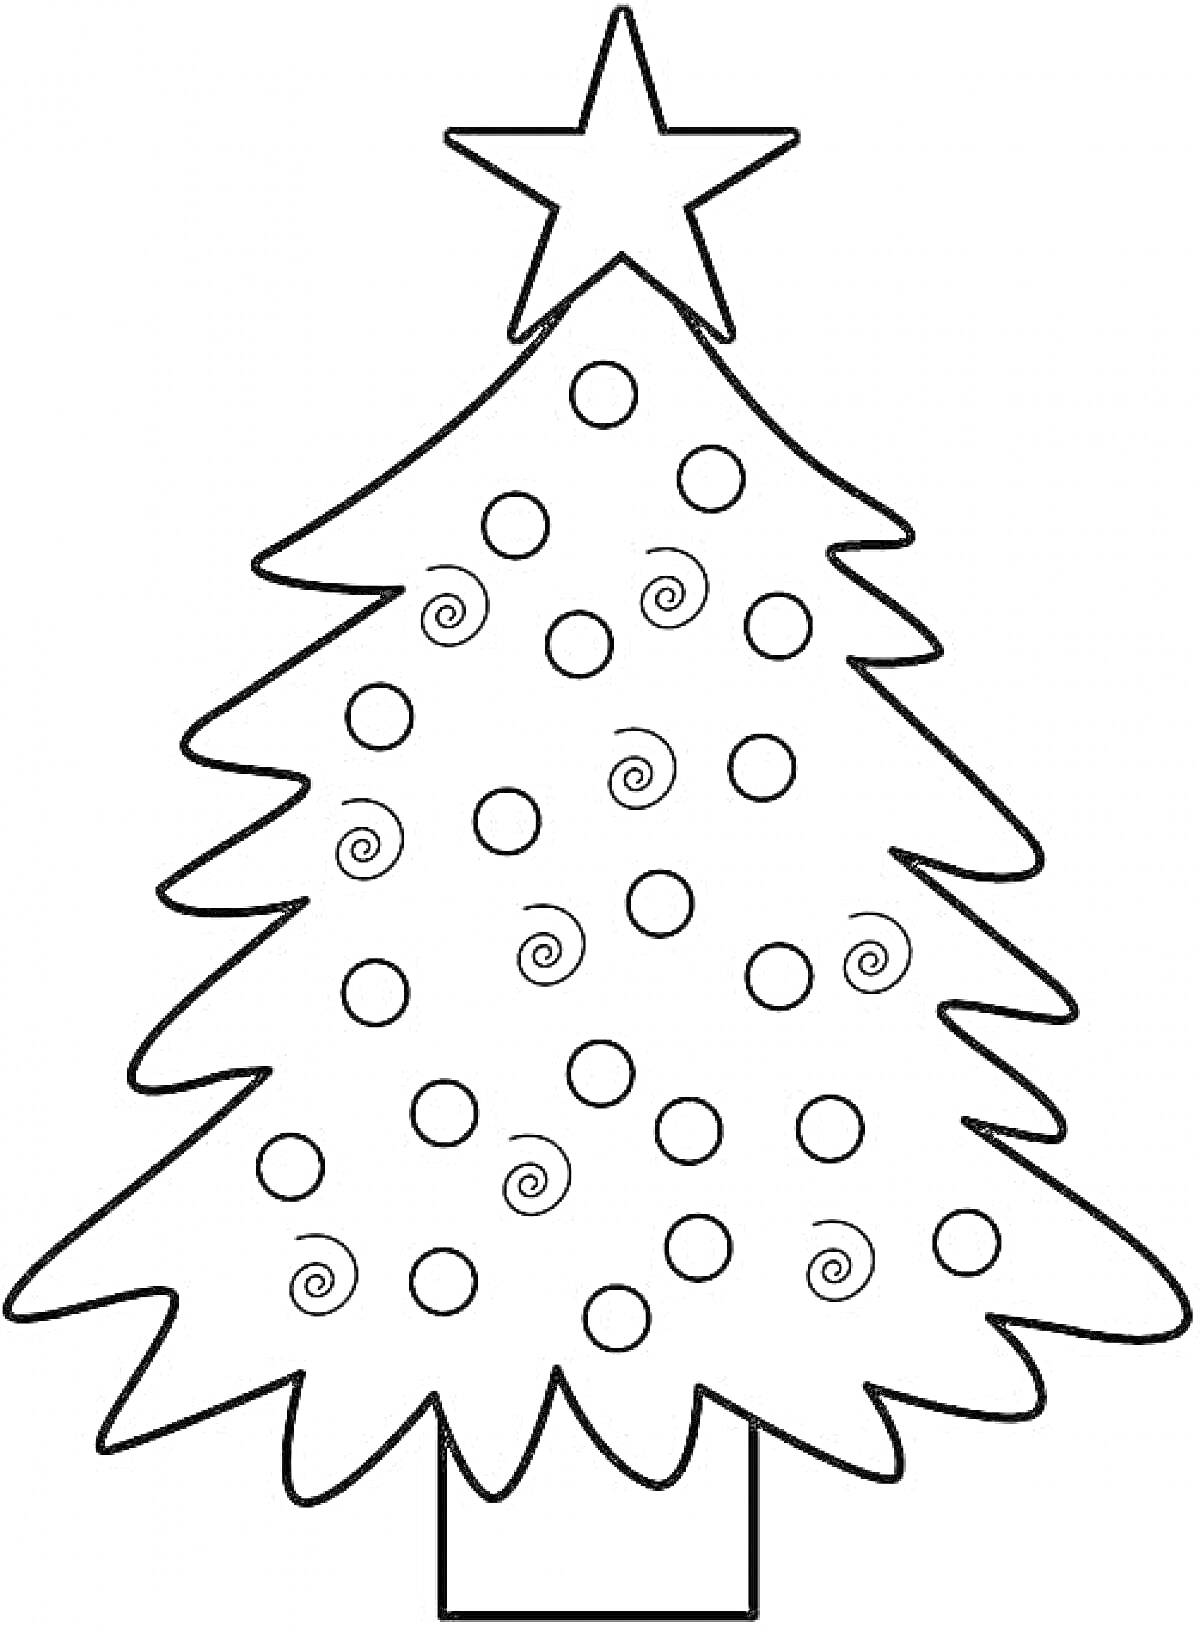 Раскраска рождественская елка со звездой наверху и узором из кружочков и спиралей